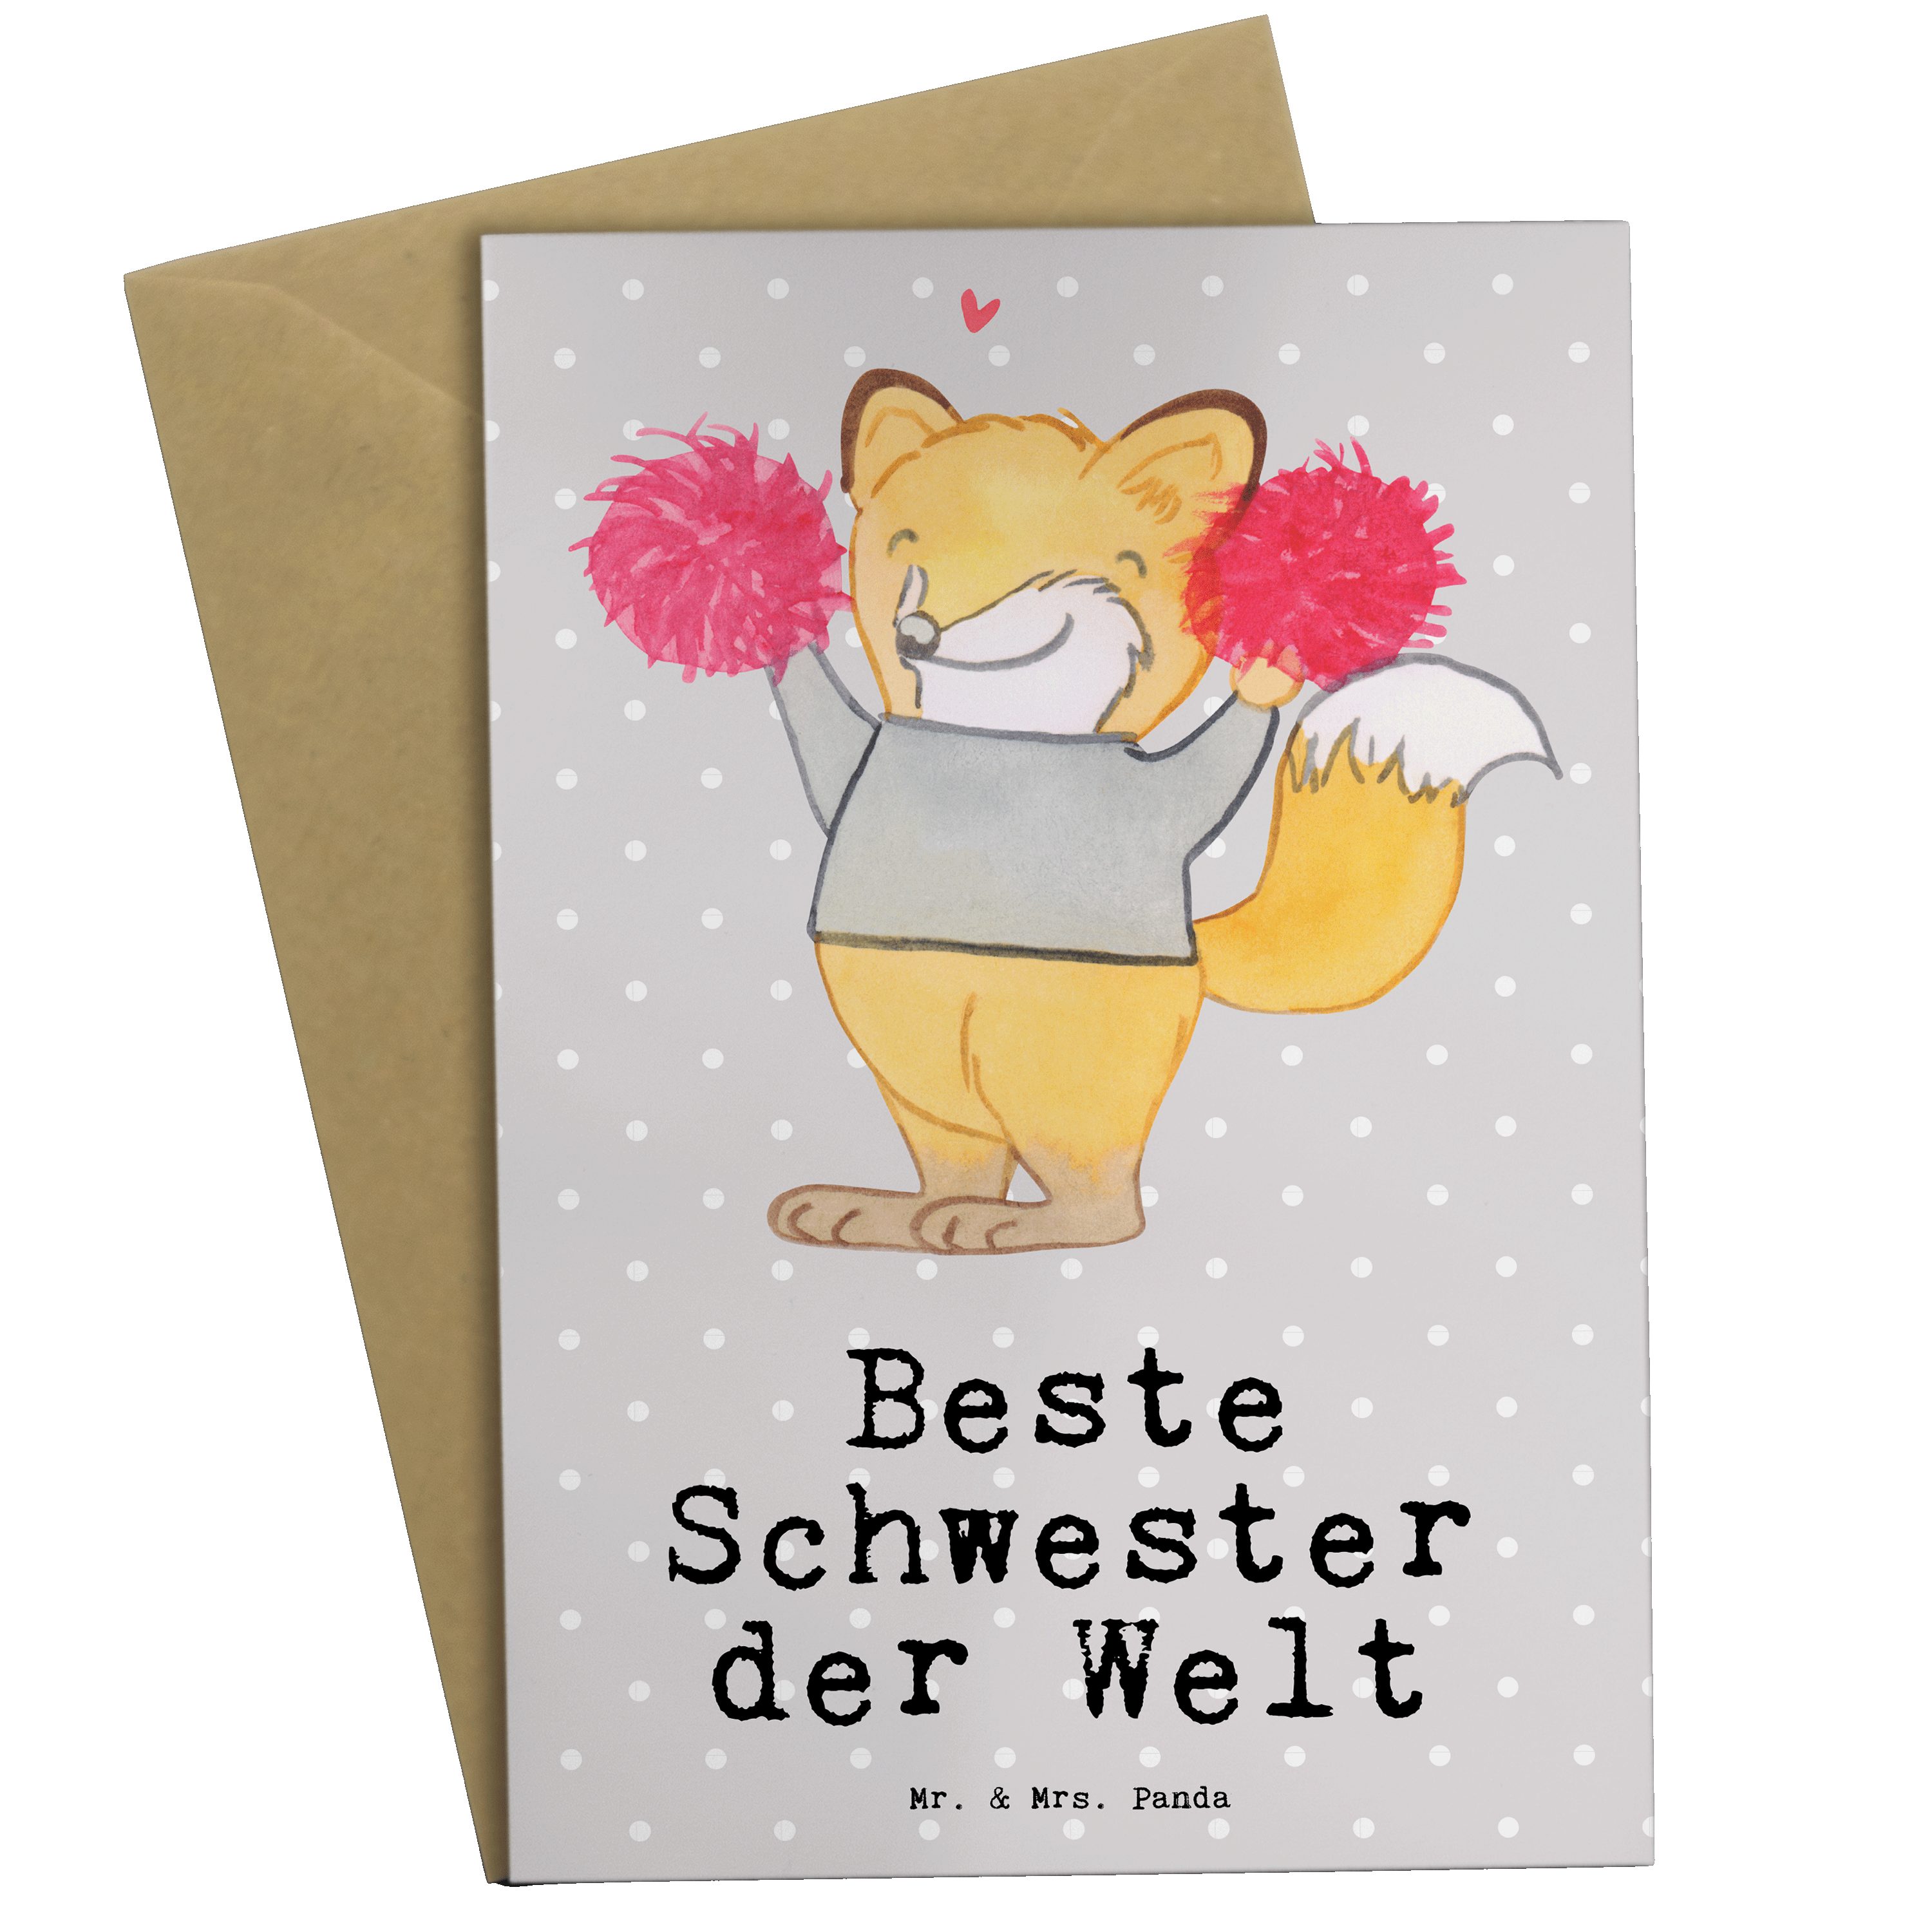 Mr. & Mrs. Panda Grußkarte Fuchs Beste Schwester der Welt - Grau Pastell - Geschenk, Hochzeitska